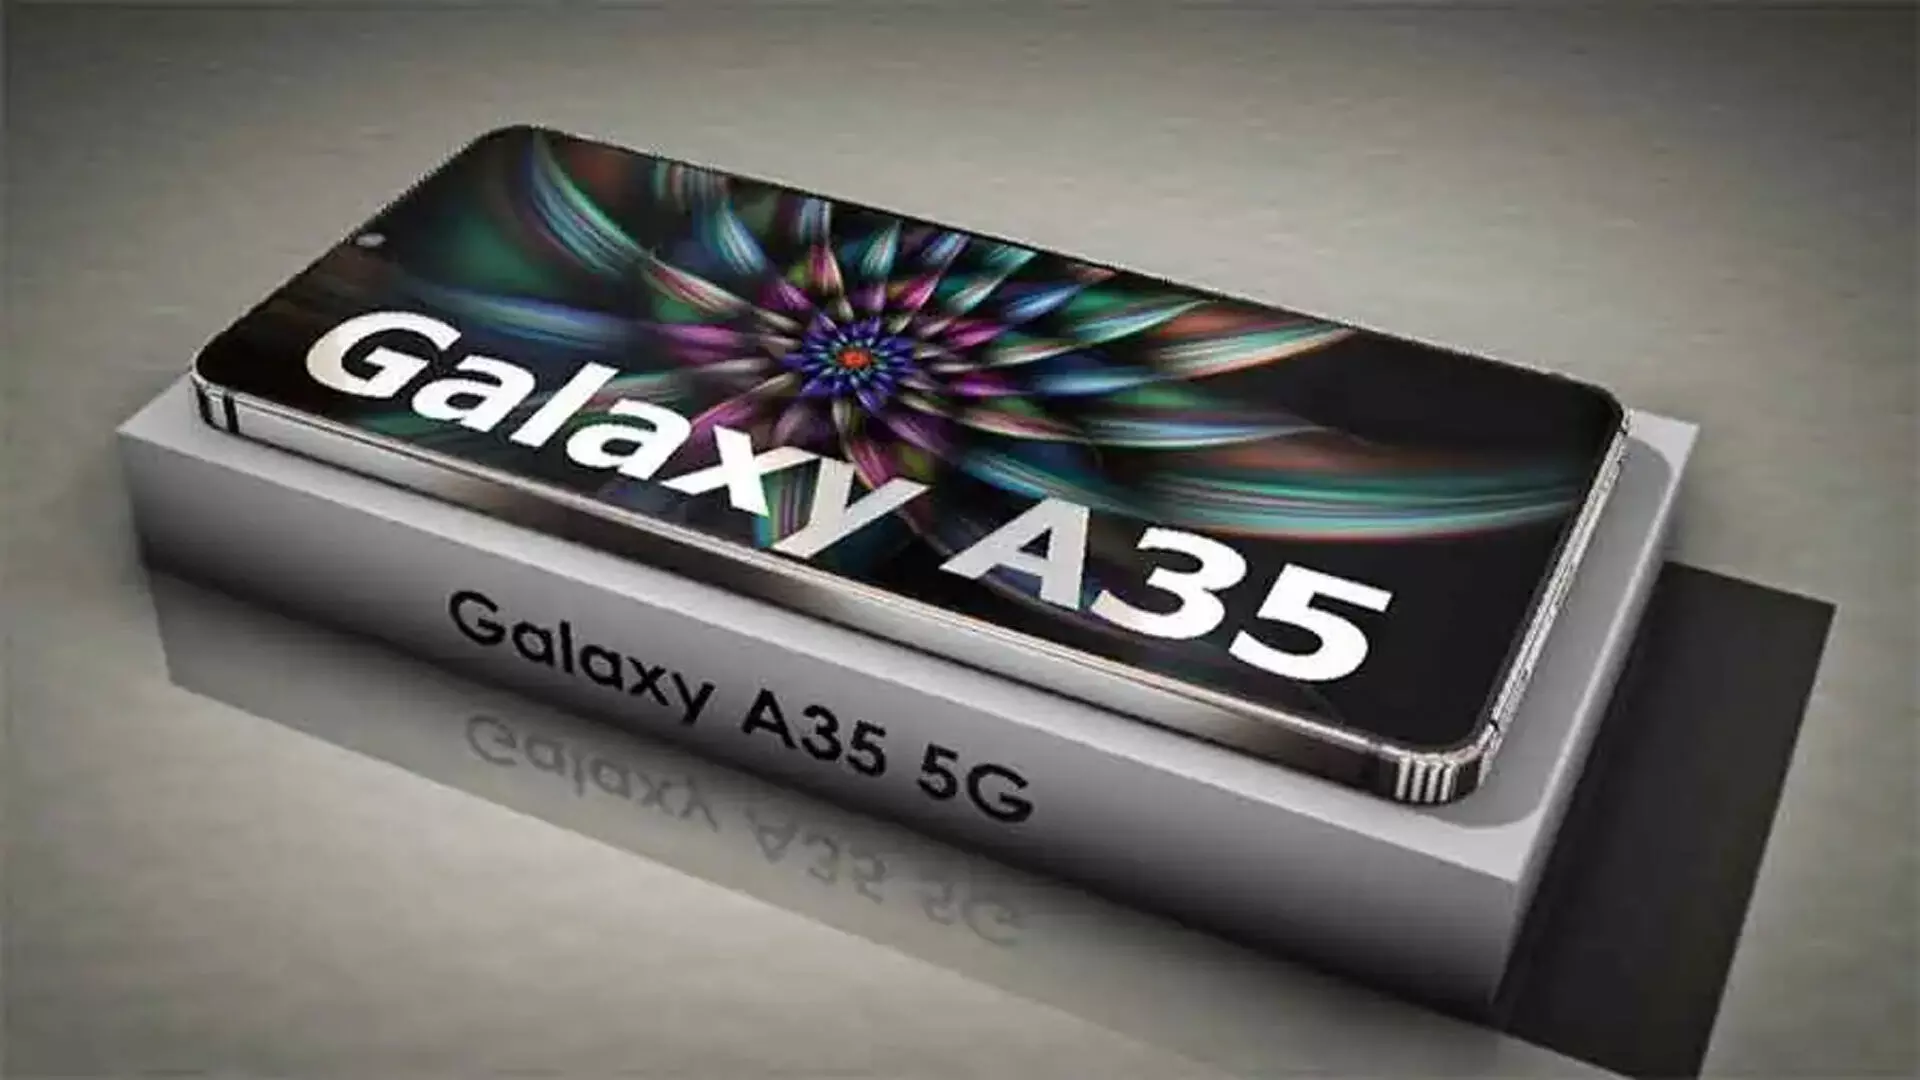 Samsung Galaxy A35 5G: कैमरा ऐसा की DSLR के छूटे पसीने, जानिए फीचर्स